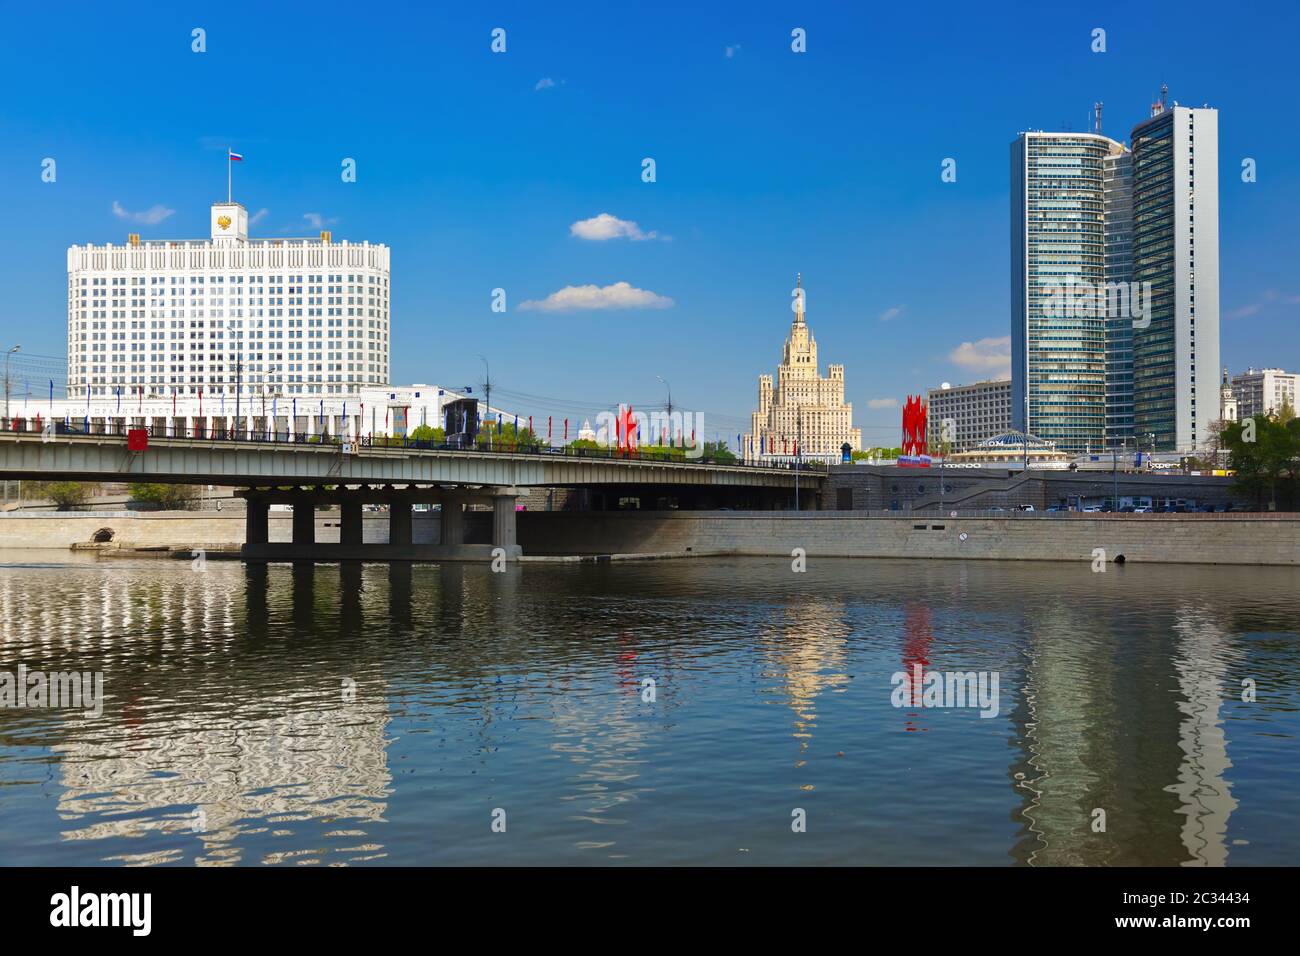 MOSKAU, RUSSLAND - MAI 01: Weißes Haus der russischen Regierung und Open Book Building (CMEA) am 01. Mai 2014 in Moskau, Russland Stockfoto